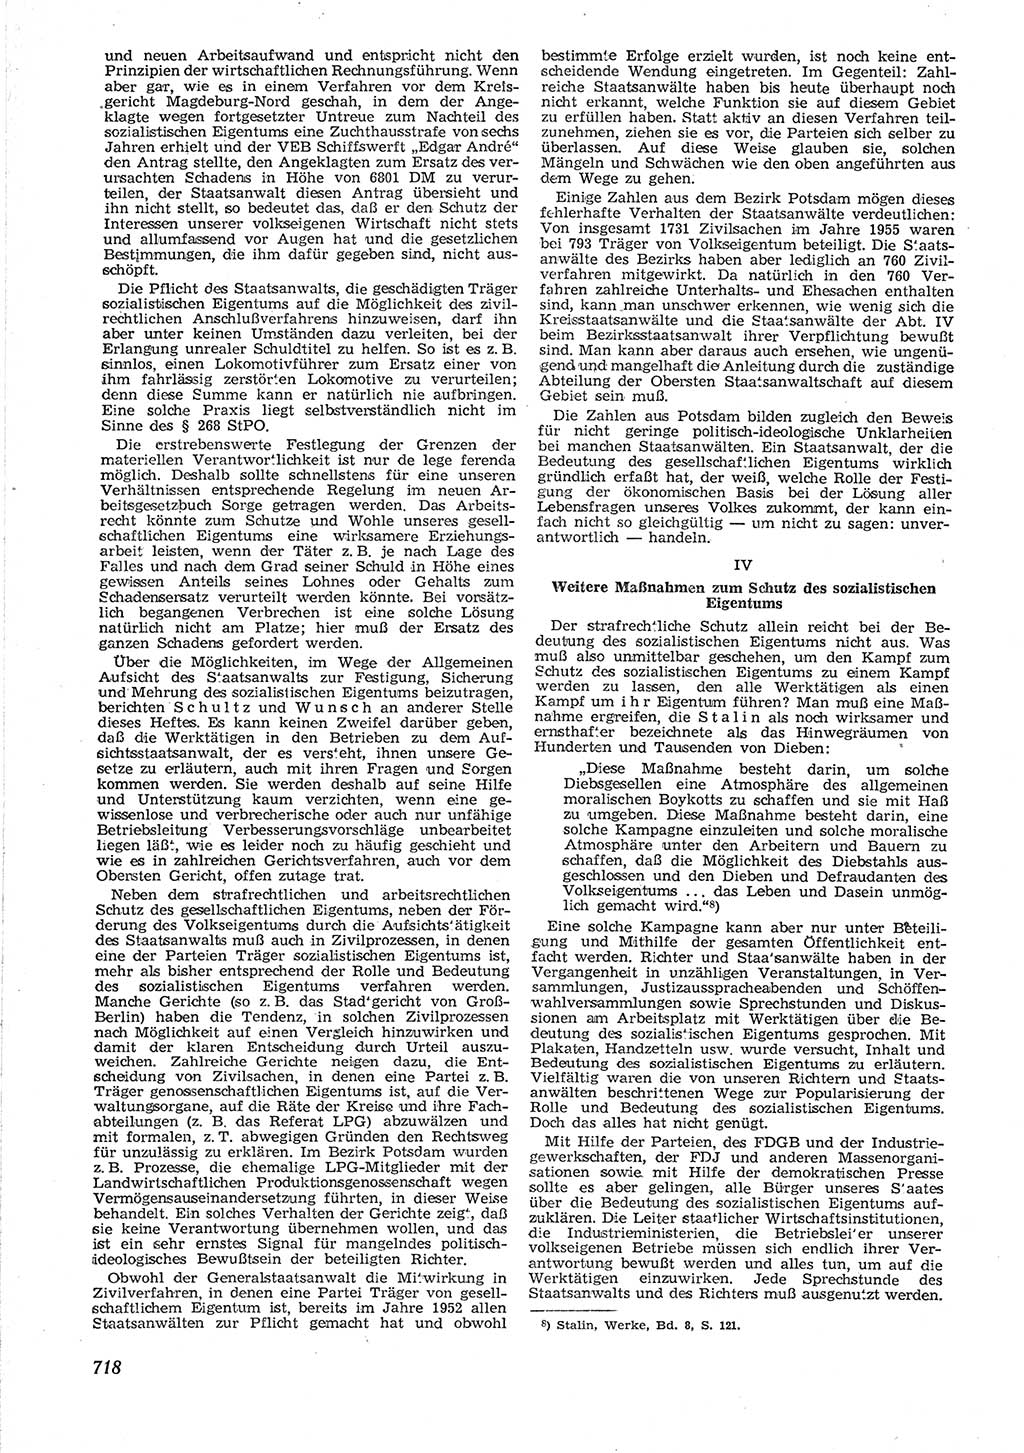 Neue Justiz (NJ), Zeitschrift für Recht und Rechtswissenschaft [Deutsche Demokratische Republik (DDR)], 9. Jahrgang 1955, Seite 718 (NJ DDR 1955, S. 718)